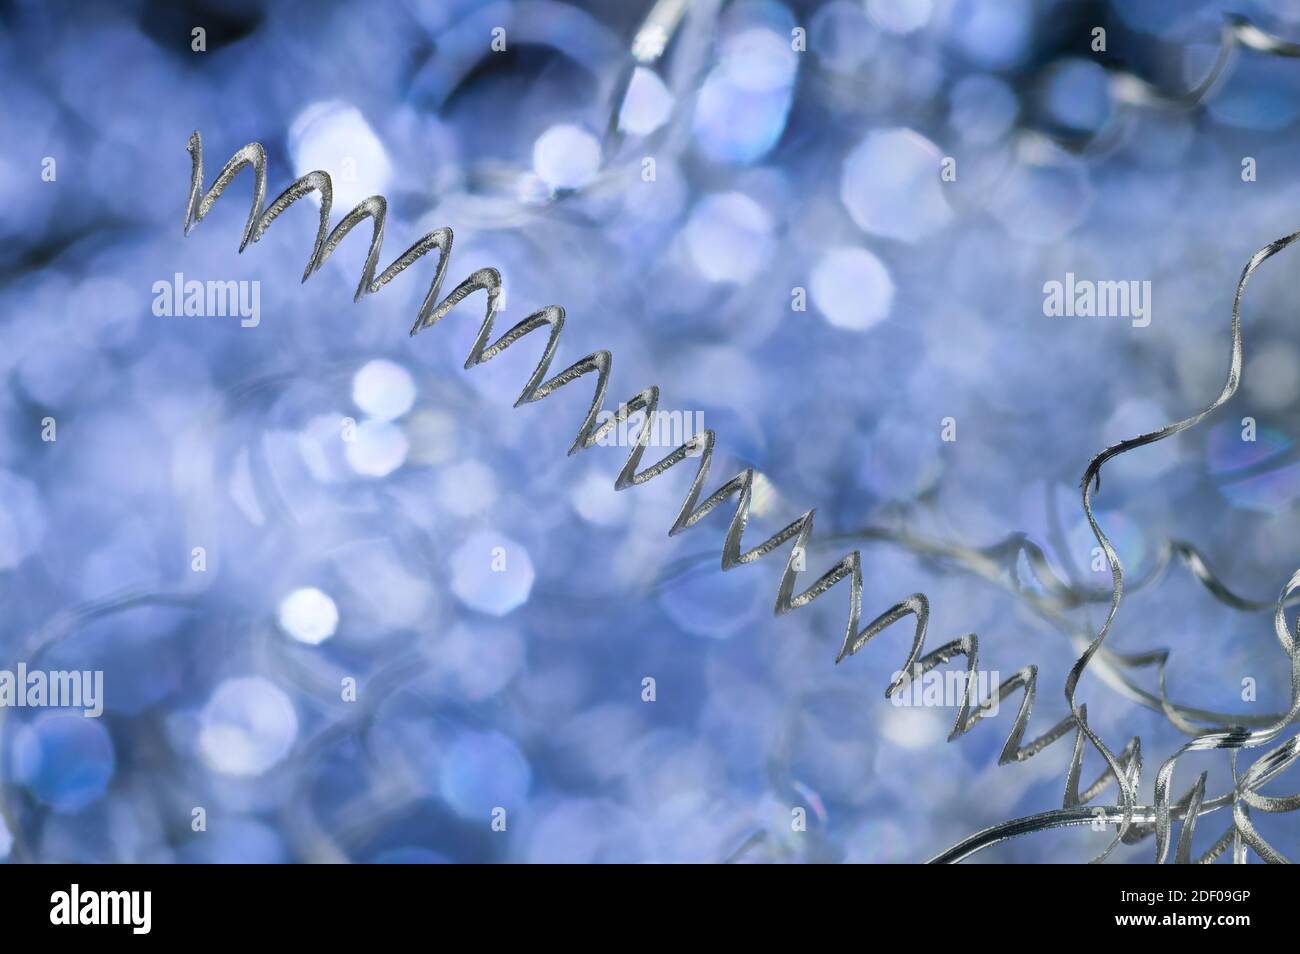 Dettaglio di sfridi in alluminio ritorto a spirale lunga su sfondo blu. Closeup di rifiuti metallici in tornitura. Sottoprodotto lavorazione truciolo. Ingegneria meccanica. Foto Stock